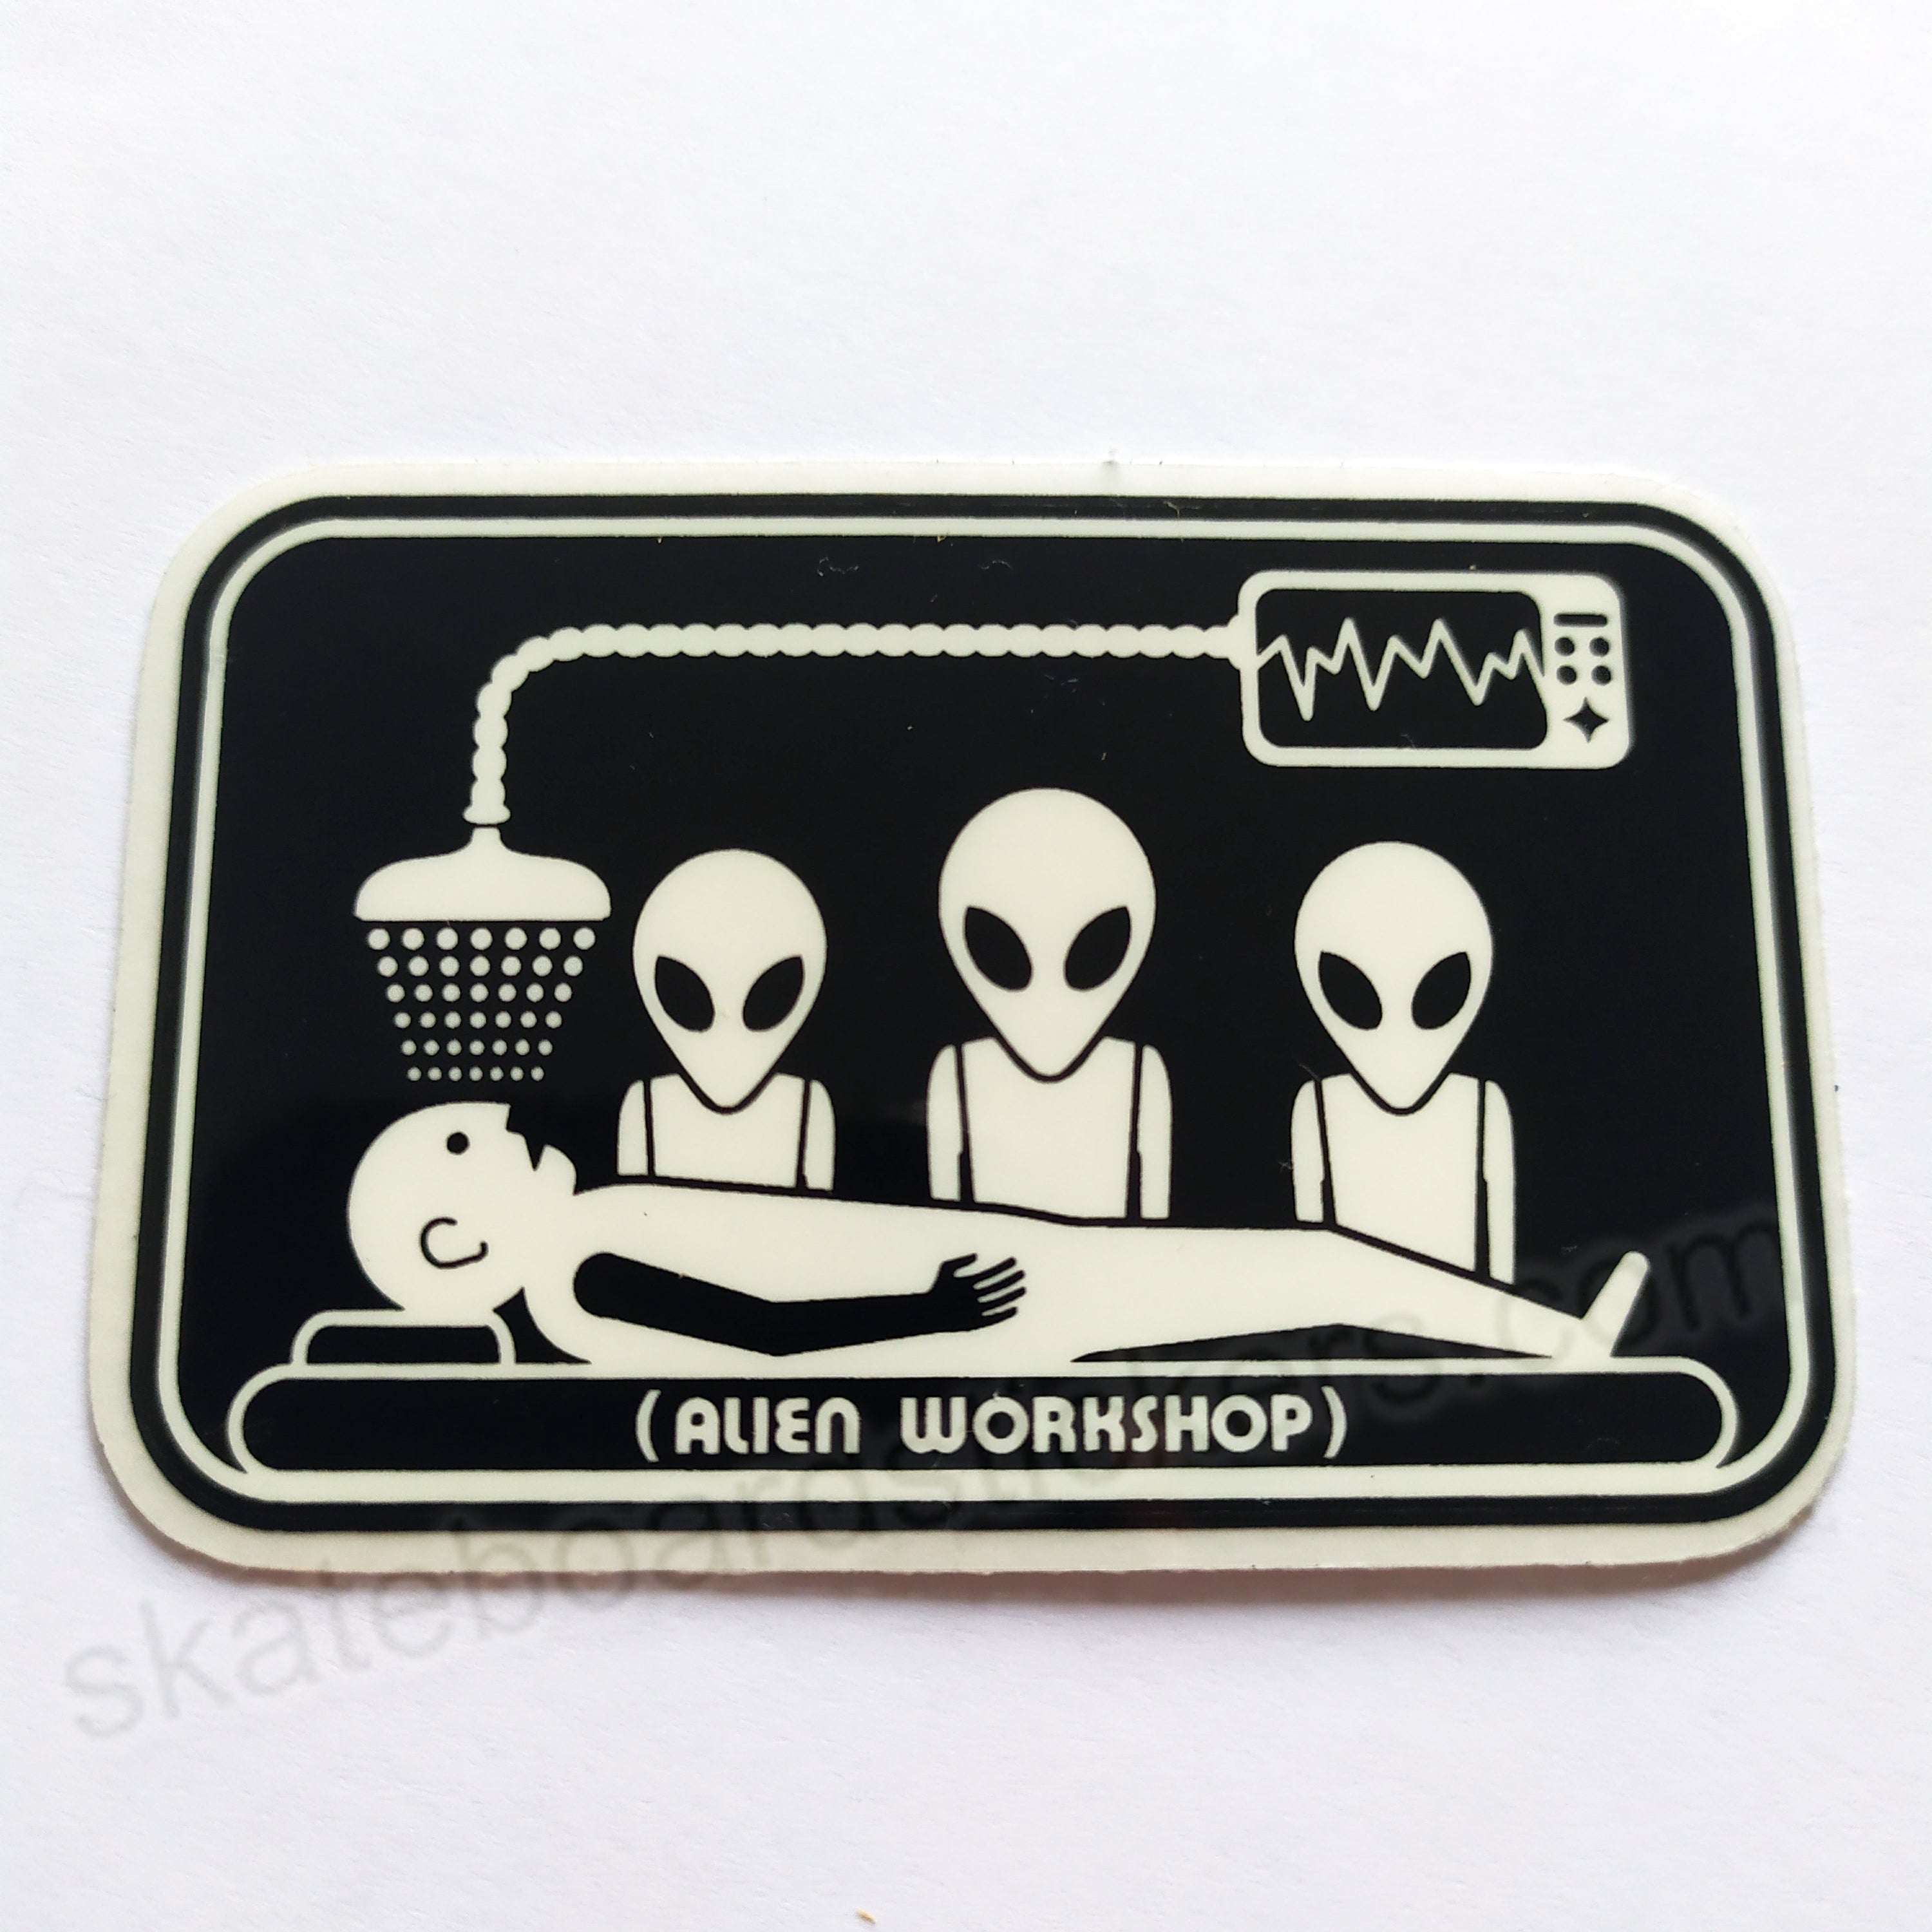 Alien Workshop Skateboard Sticker - Abduction - 7cm across approx - SkateboardStickers.com